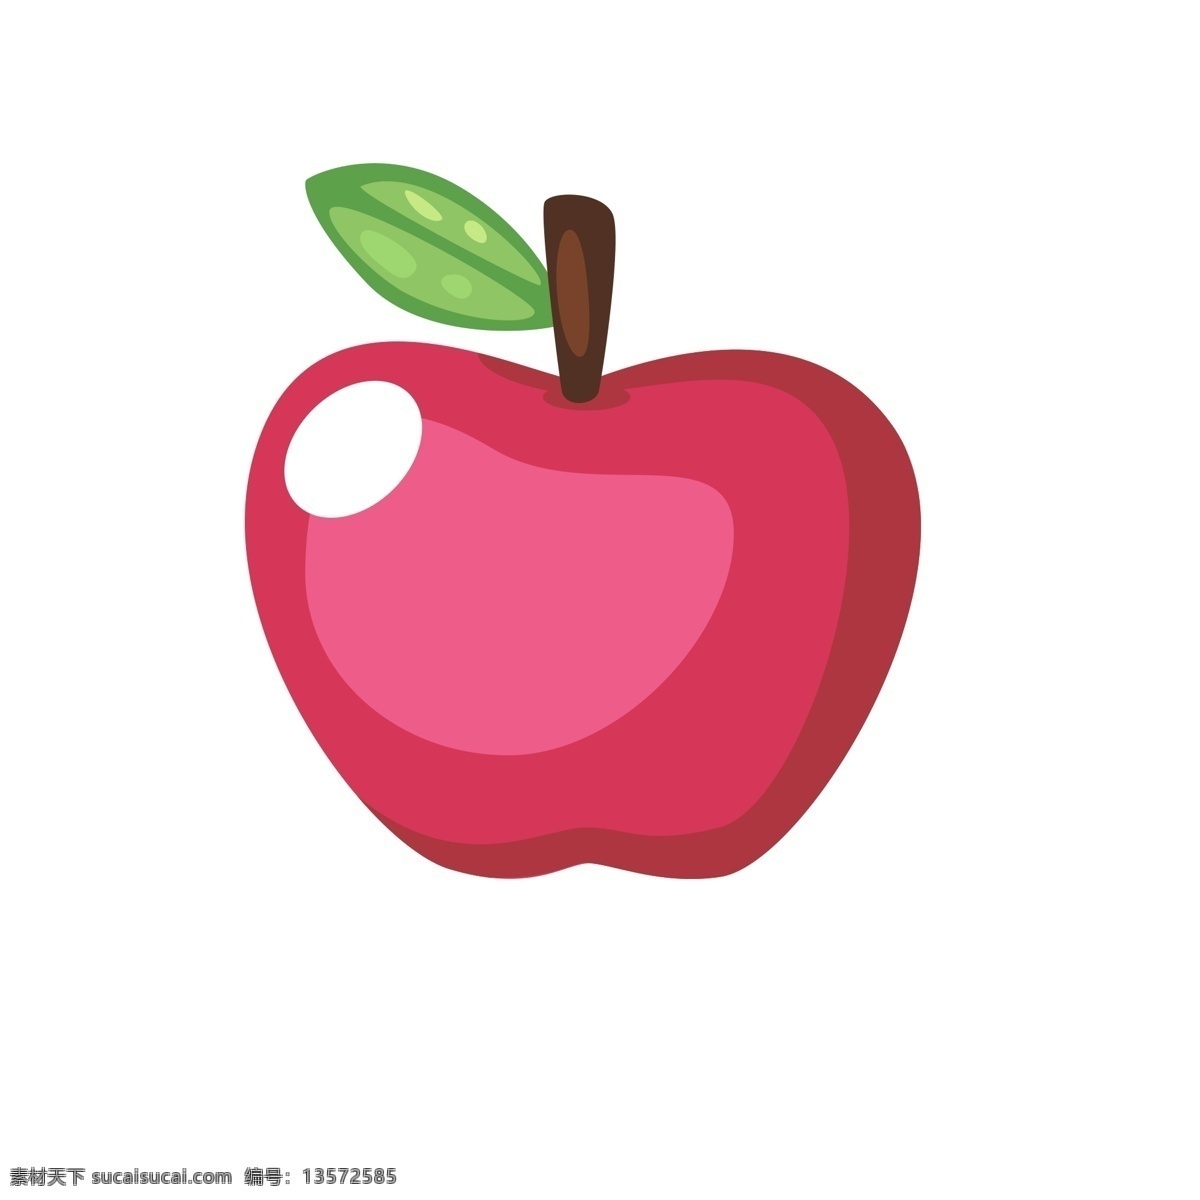 美味 食物 红苹果 红色 苹果 apple 水果